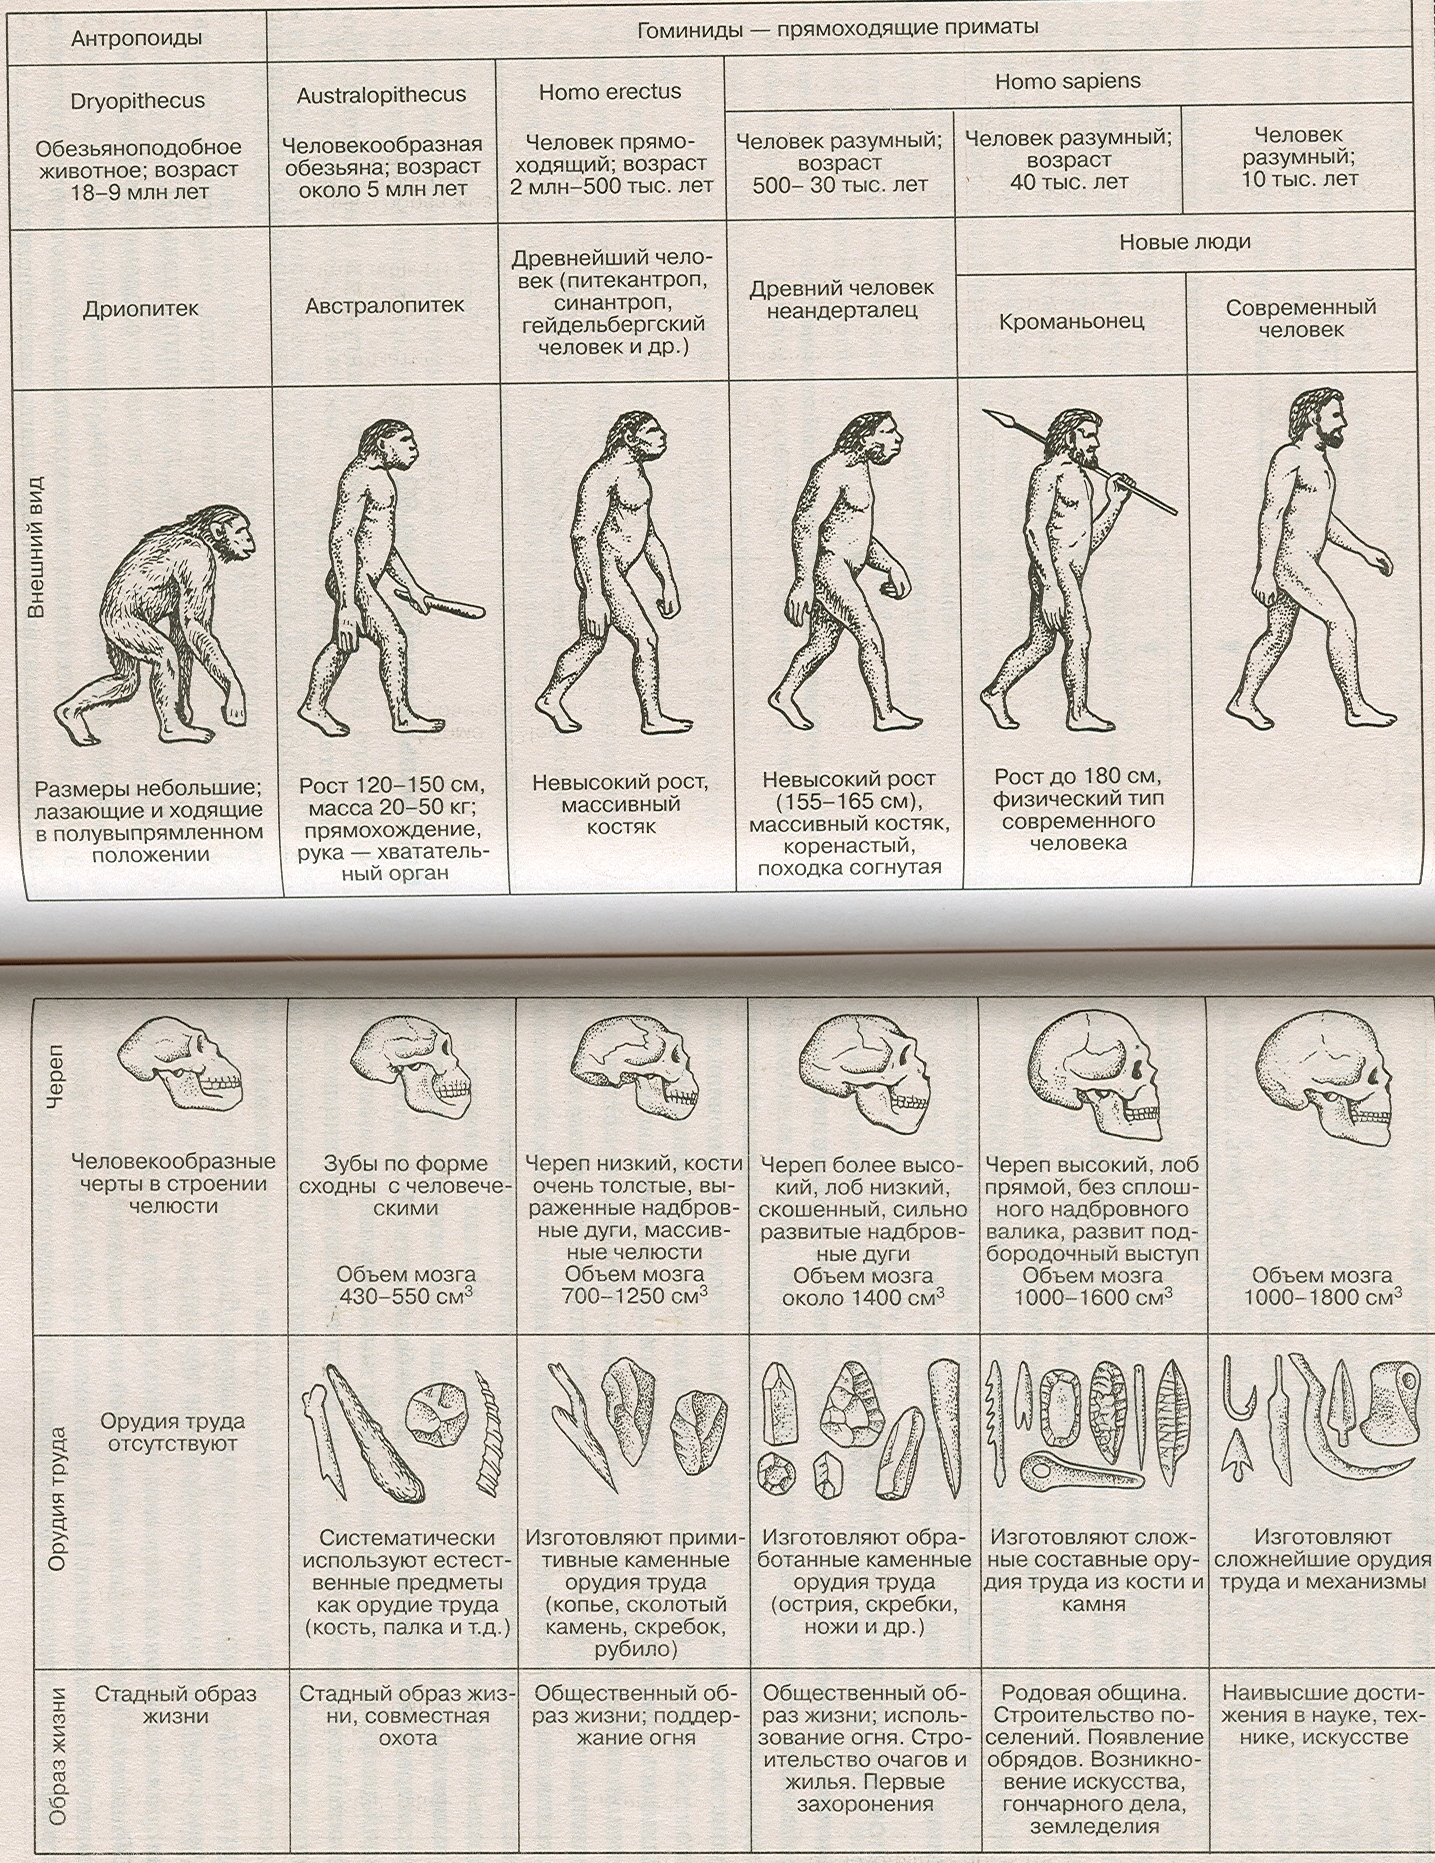 Какие стадии выделяют в процессе становления человека. Этапы развития человека таблица этапы антропогенеза. Этапы эволюции человека таблица дриопитек. Основные стадии развития человека таблица. Стадия развития человека таблица по биологии.